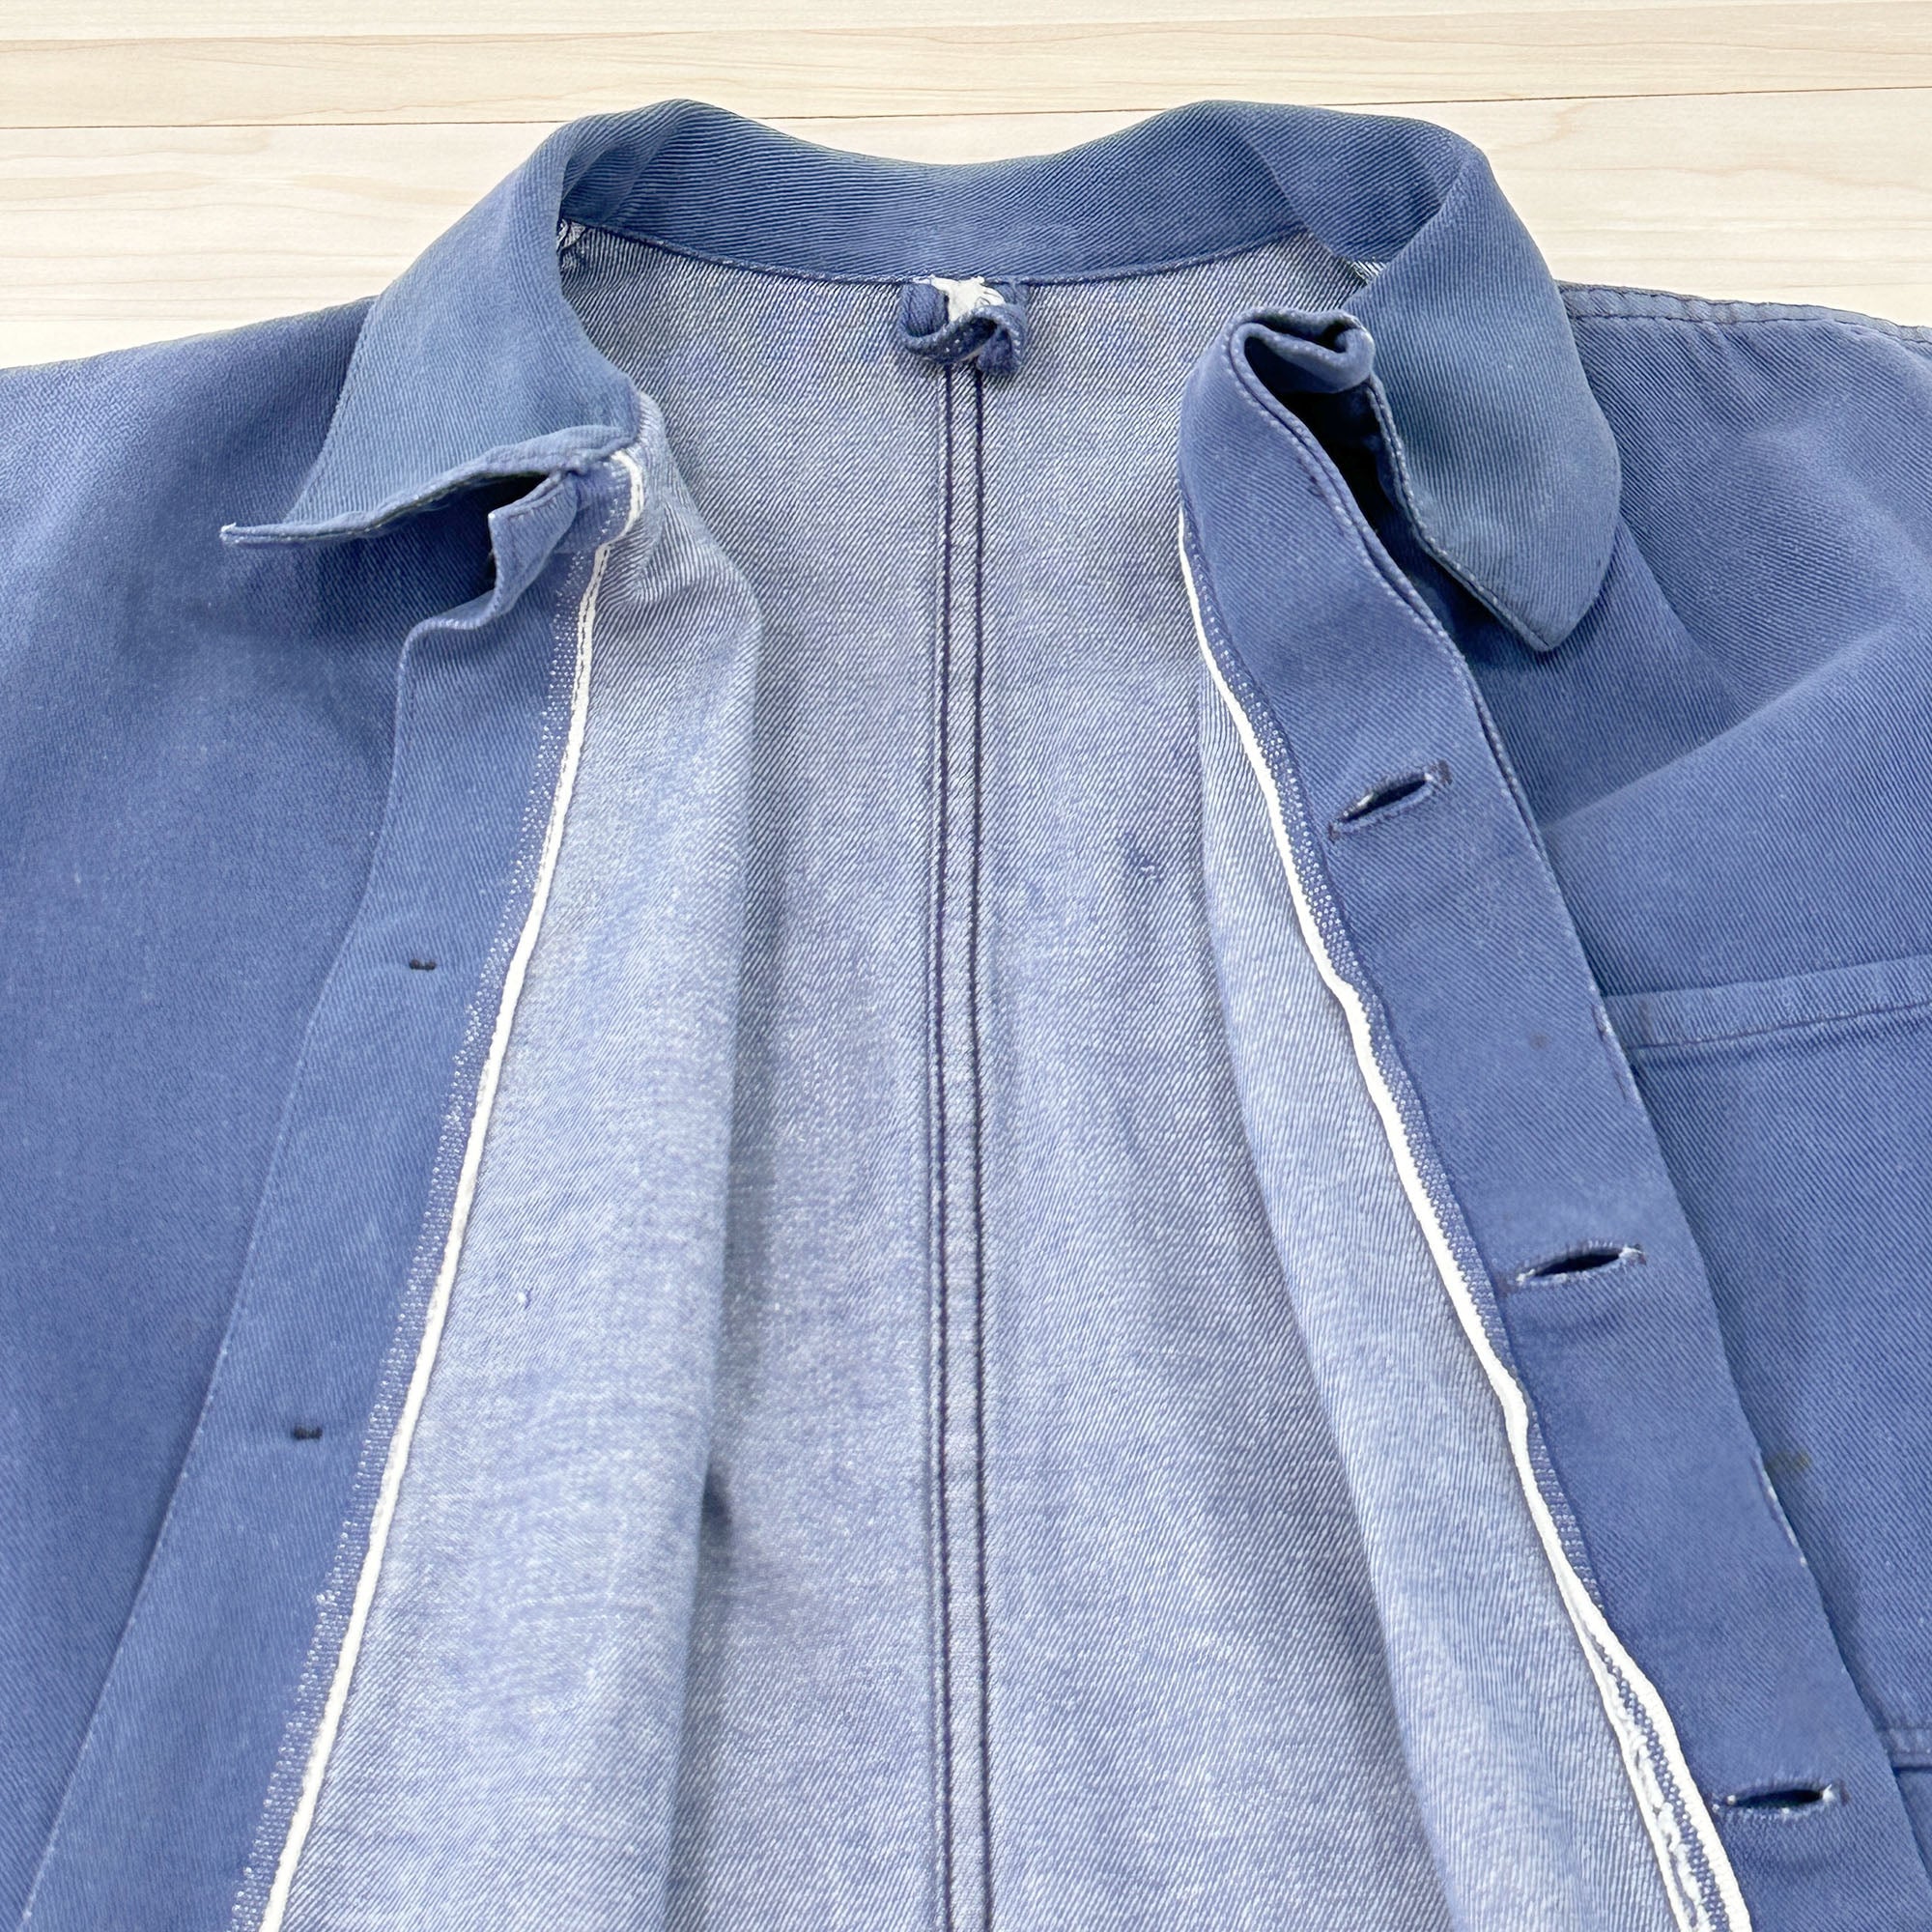 Distressed Vintage Krähe Blue Work Jacket - Women's Medium-4